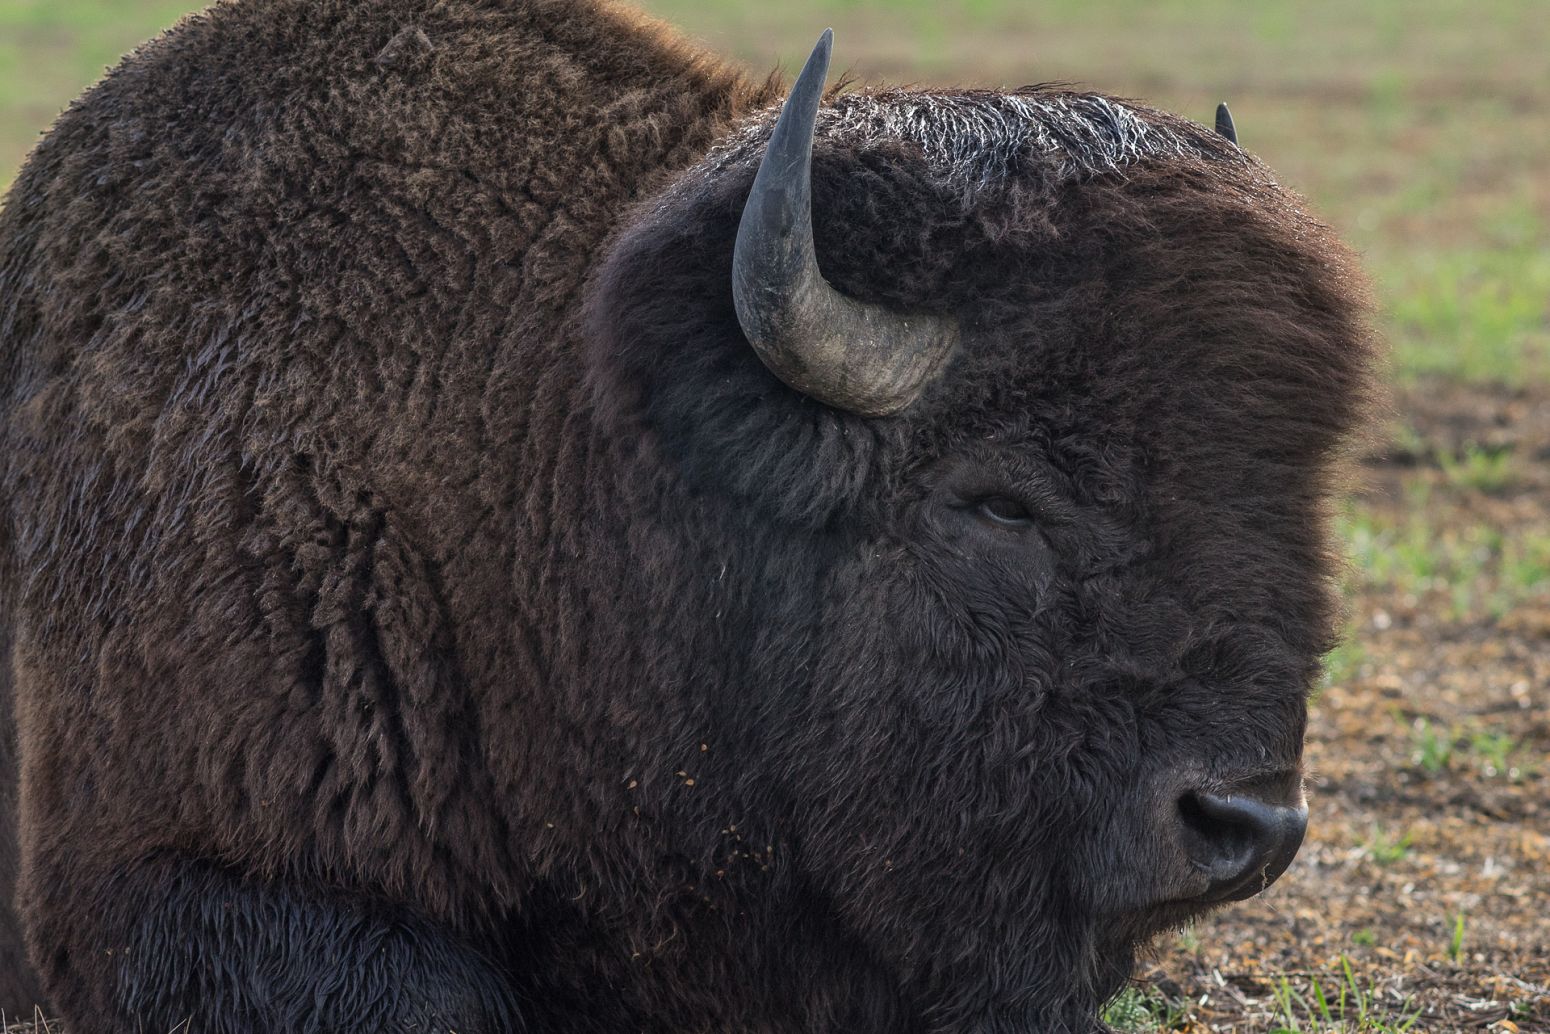 Bison in Grand Teton NP, Wyoming, USA